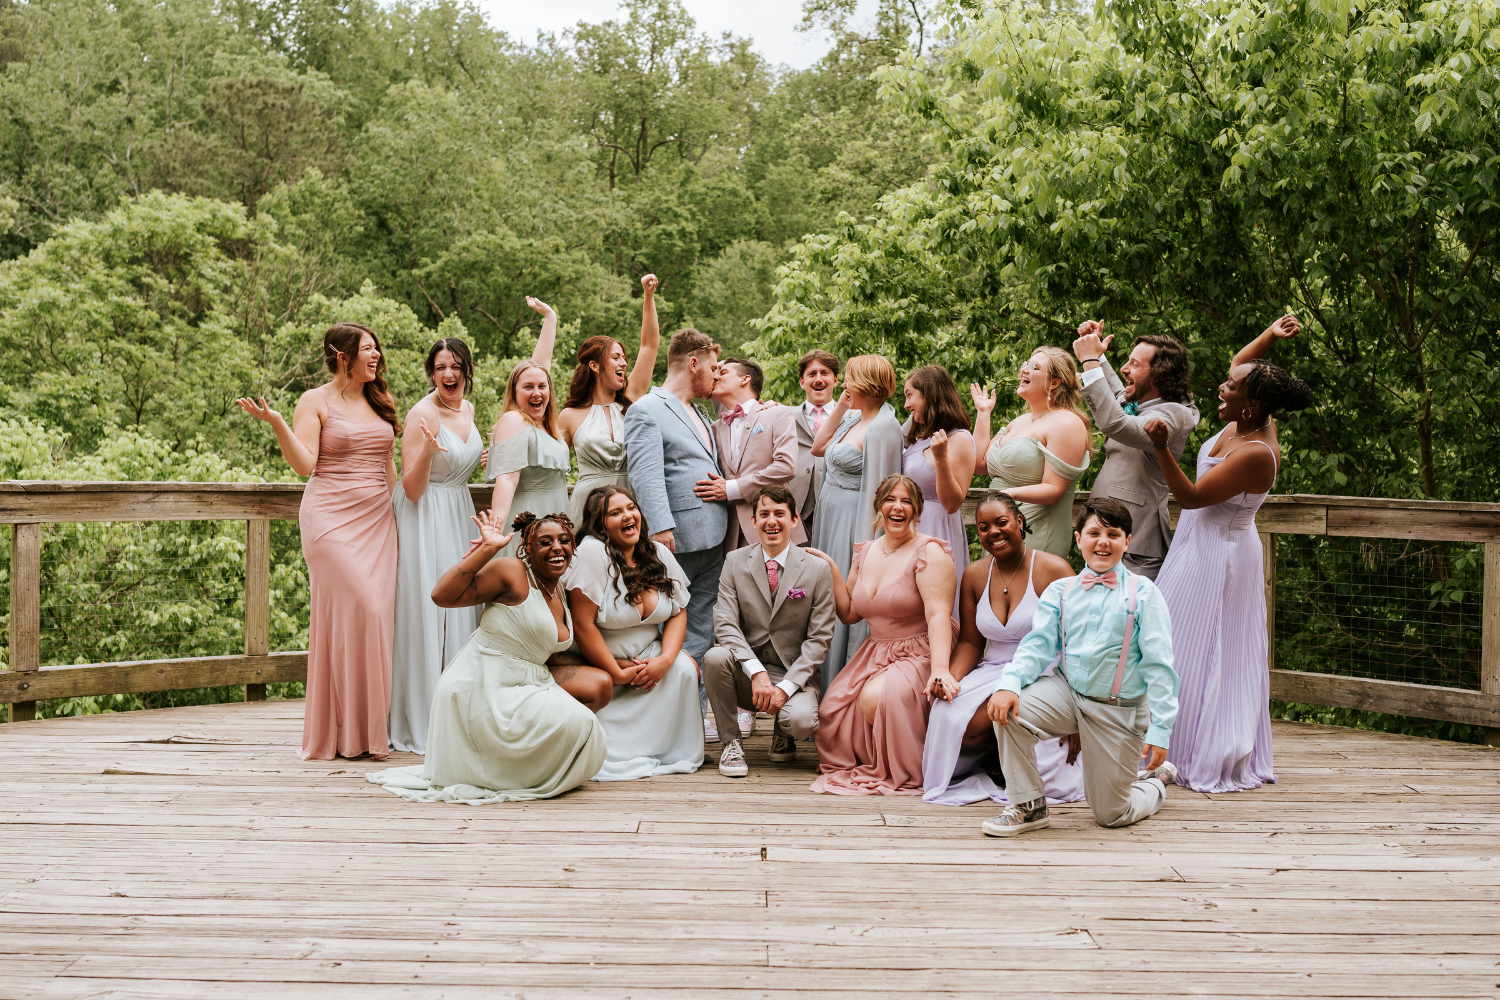 Des invités de mariage prenant la pose, vêtus de vêtements de couleurs pastel et riant aux éclats.